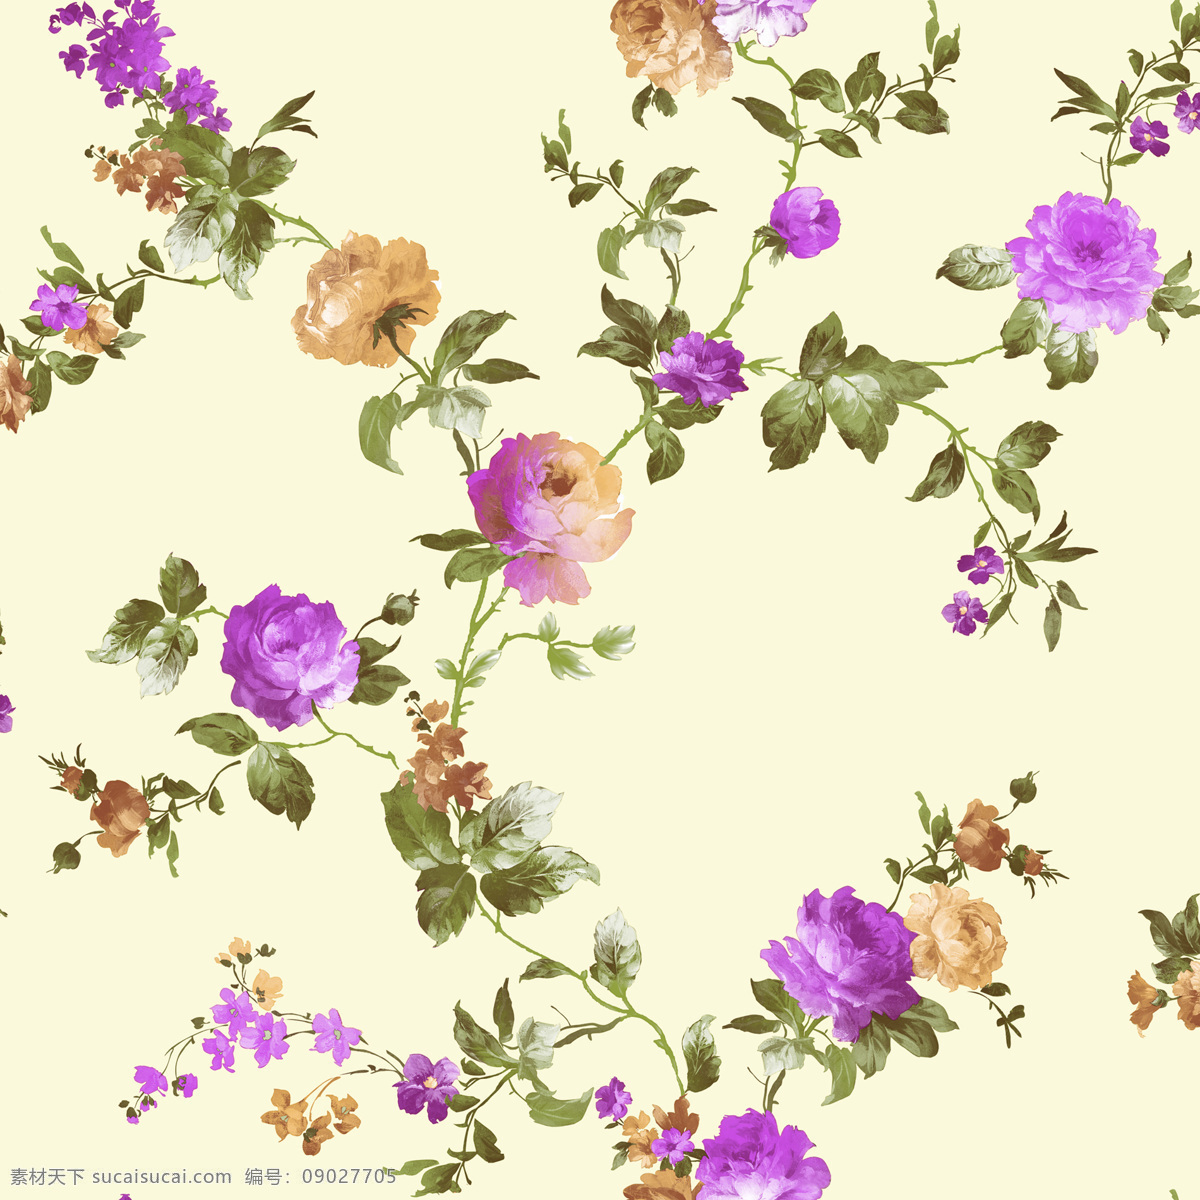 田园 风 藤条 花 壁纸 紫色 花朵 叶子 手绘花 藤条花壁纸 花边花纹 底纹边框